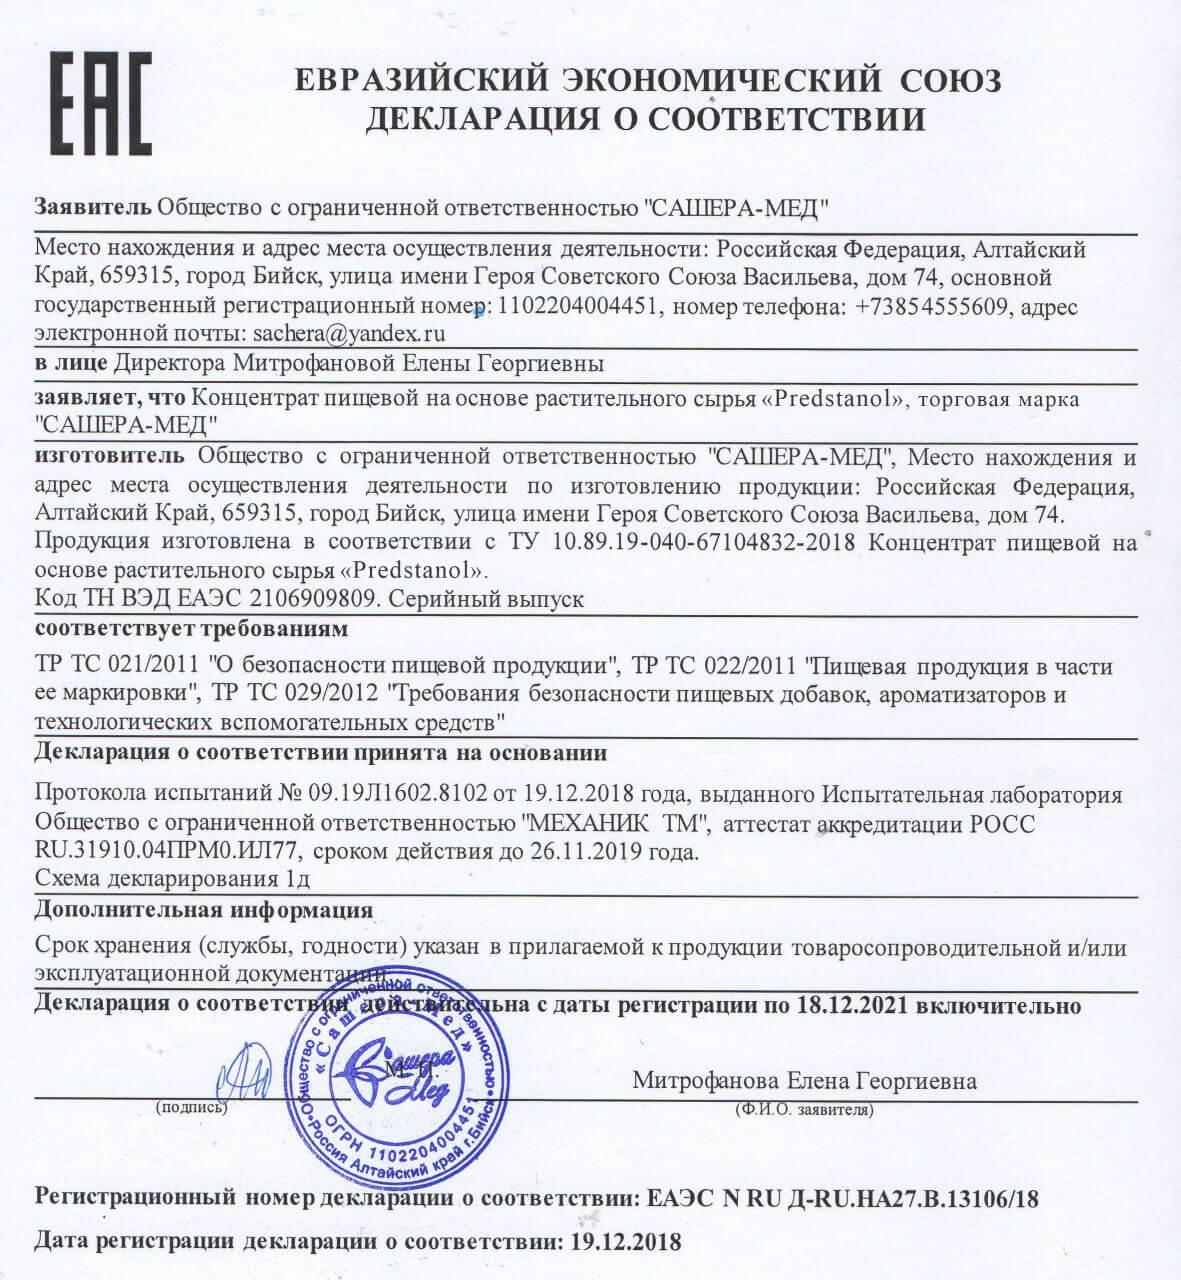 Сертификат на предстанол в Тольятти